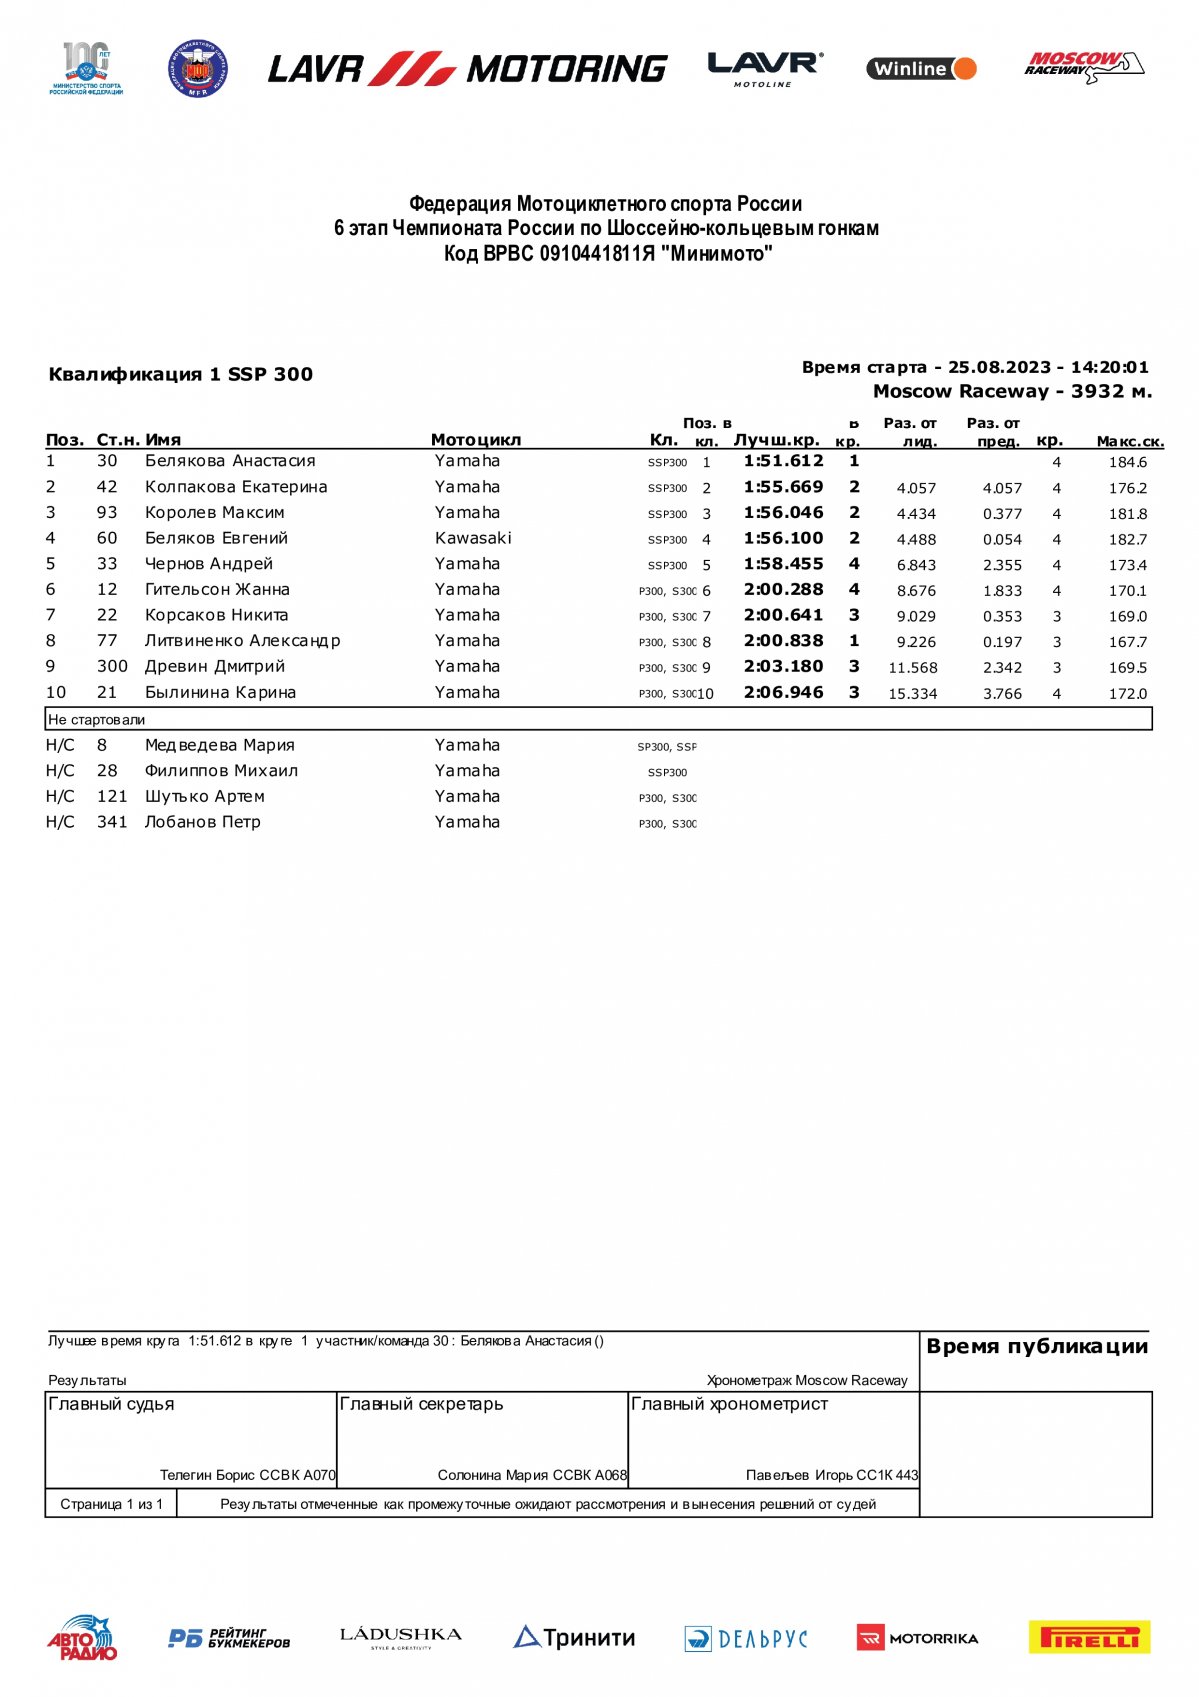 Результаты квалификации 6 этапа SSP300, Чемпионат России Lavr Motoring - 25.08.2023